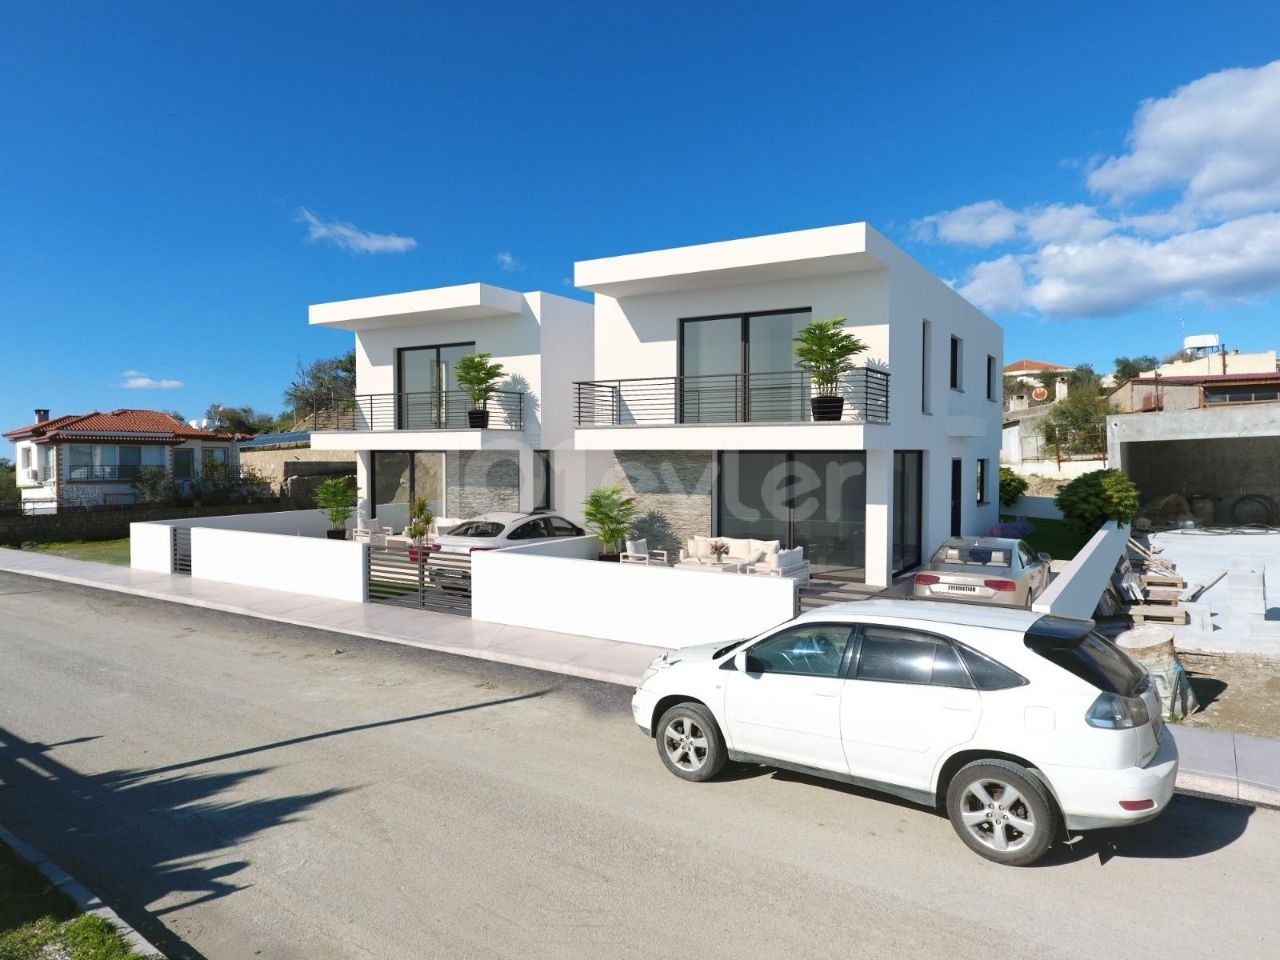 Villa zum Verkauf in der Projektphase in der Region Gönyeli